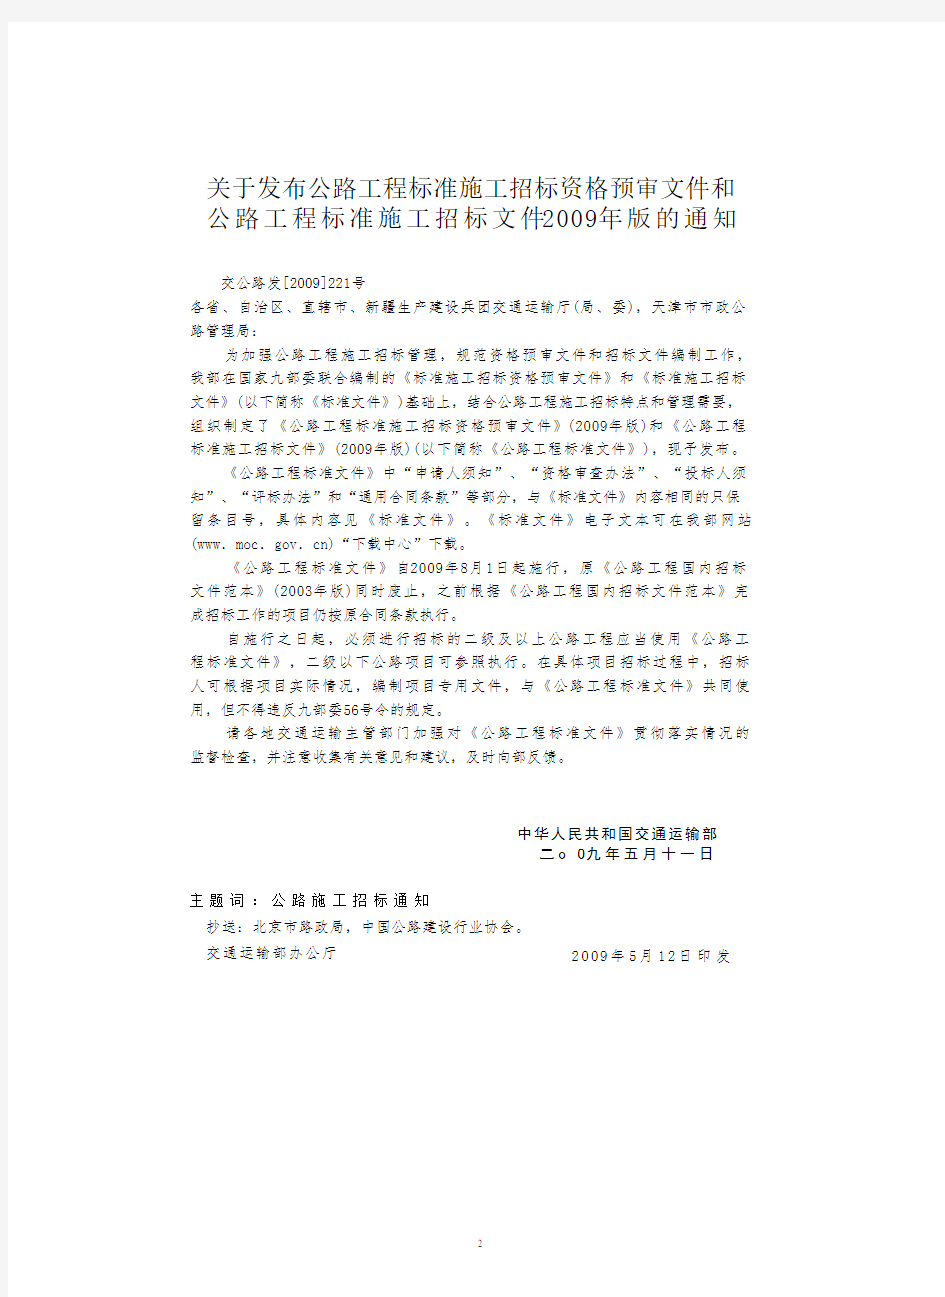 公路工程标准施工招标文件(版)下册(2020年10月整理).pdf